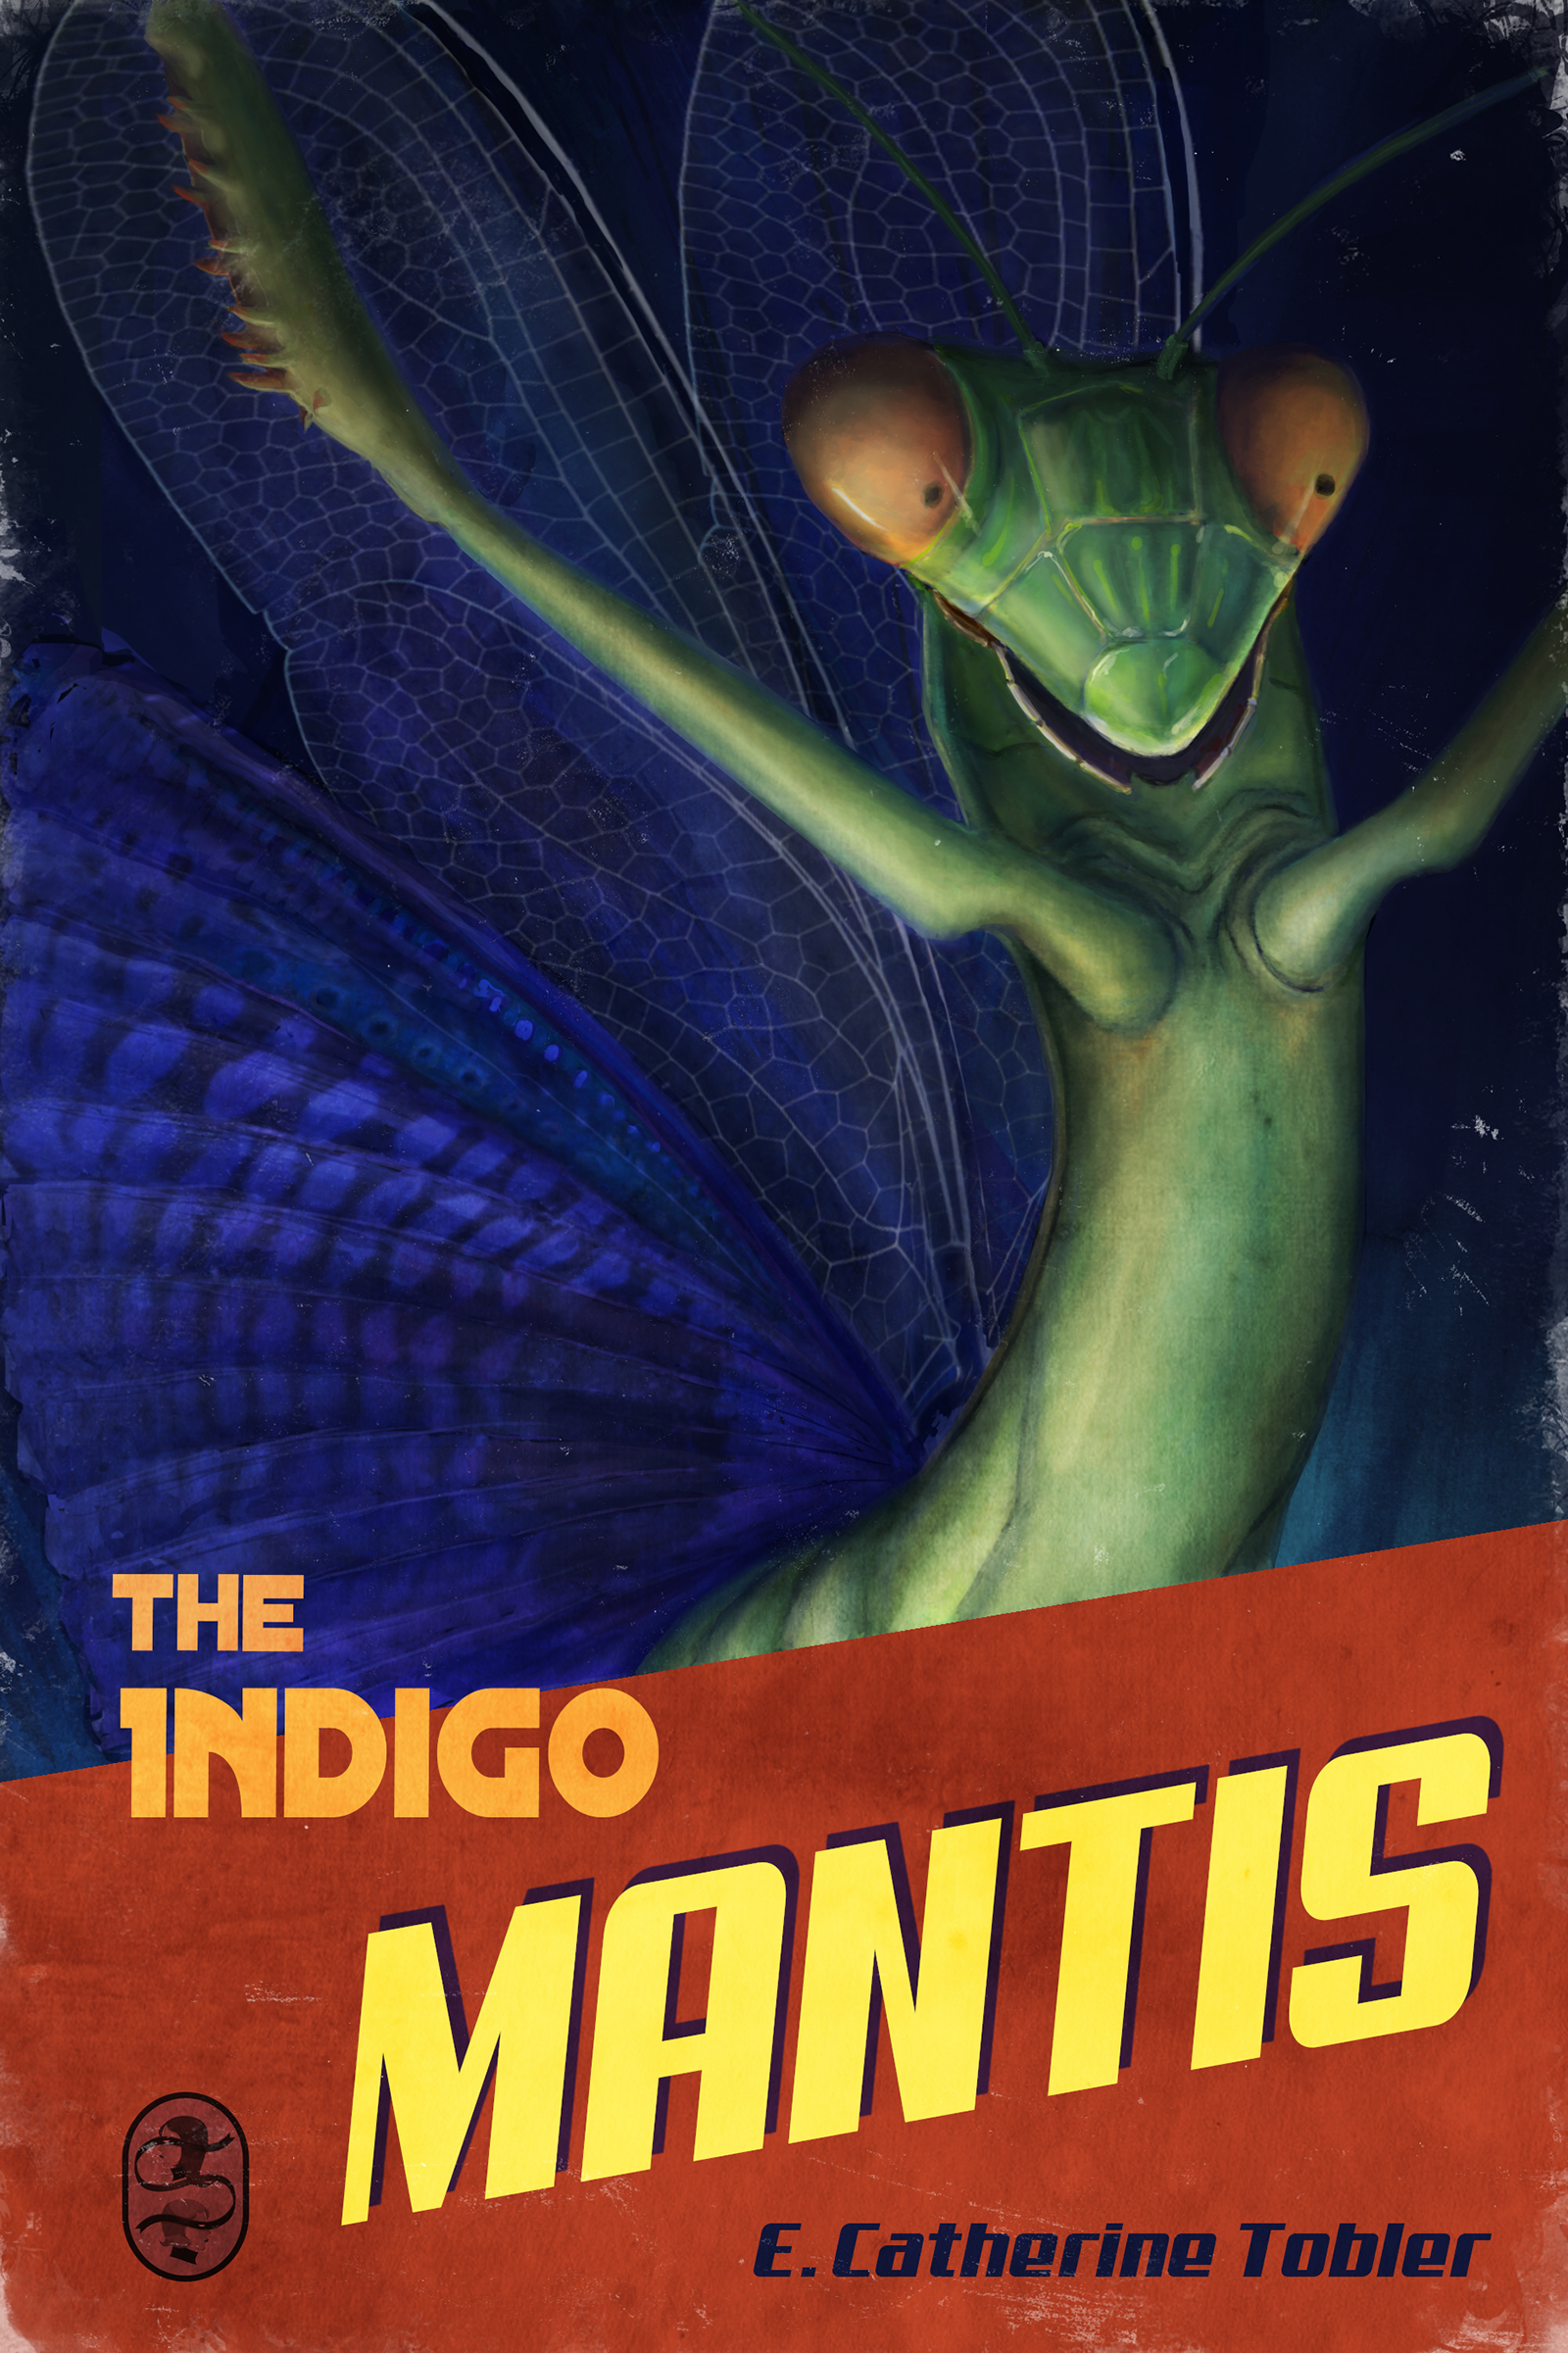 The Indigo Mantis